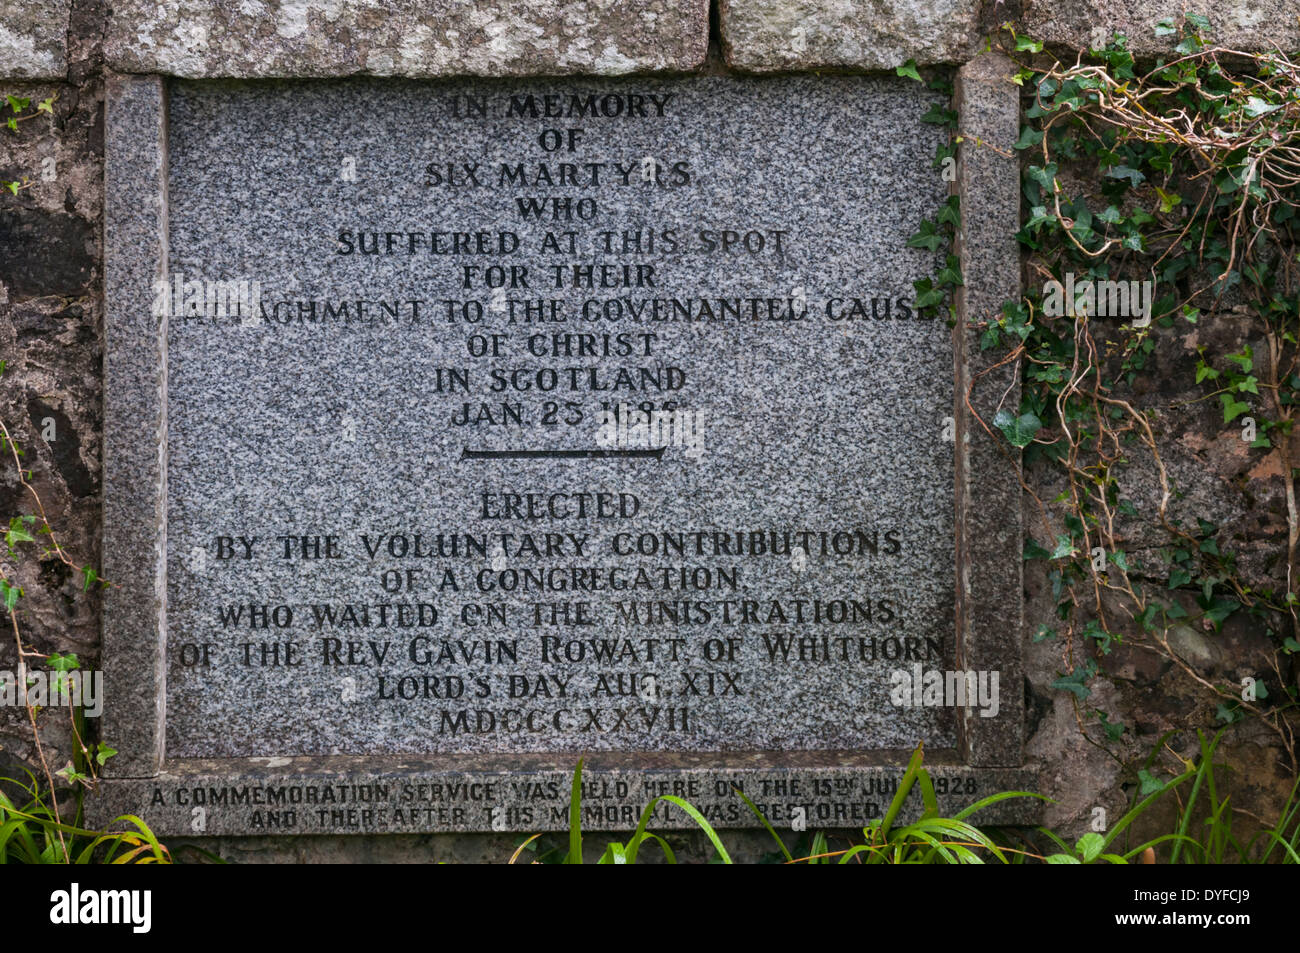 Ein Denkmal für sechs Märtyrer, die an dieser Stelle für ihre Verbundenheit mit dem Bund Ursache Christi in Schottland 1685 erlitten Stockfoto